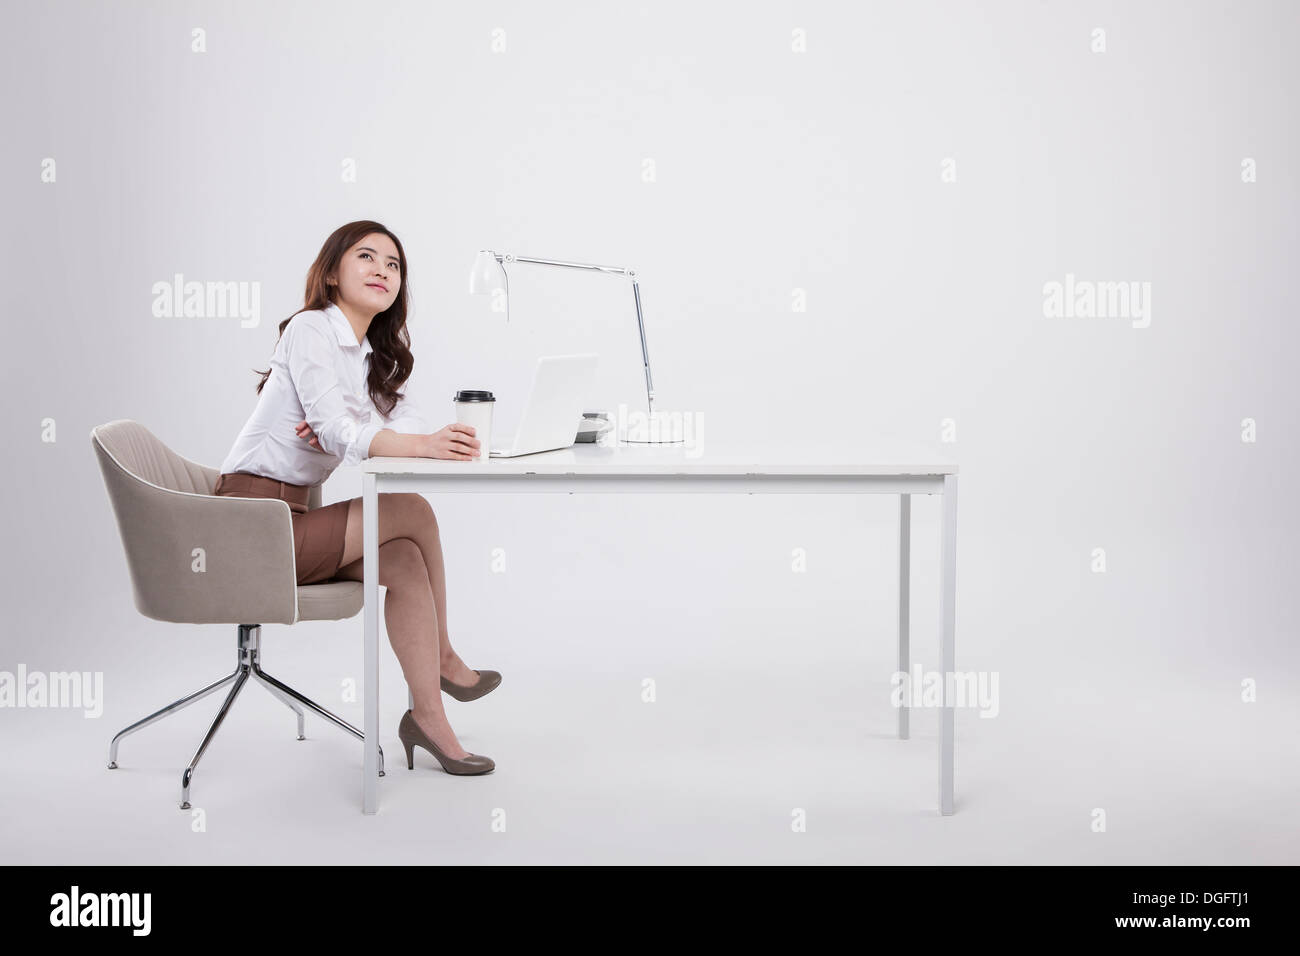 Une business woman sitting at desk Banque D'Images